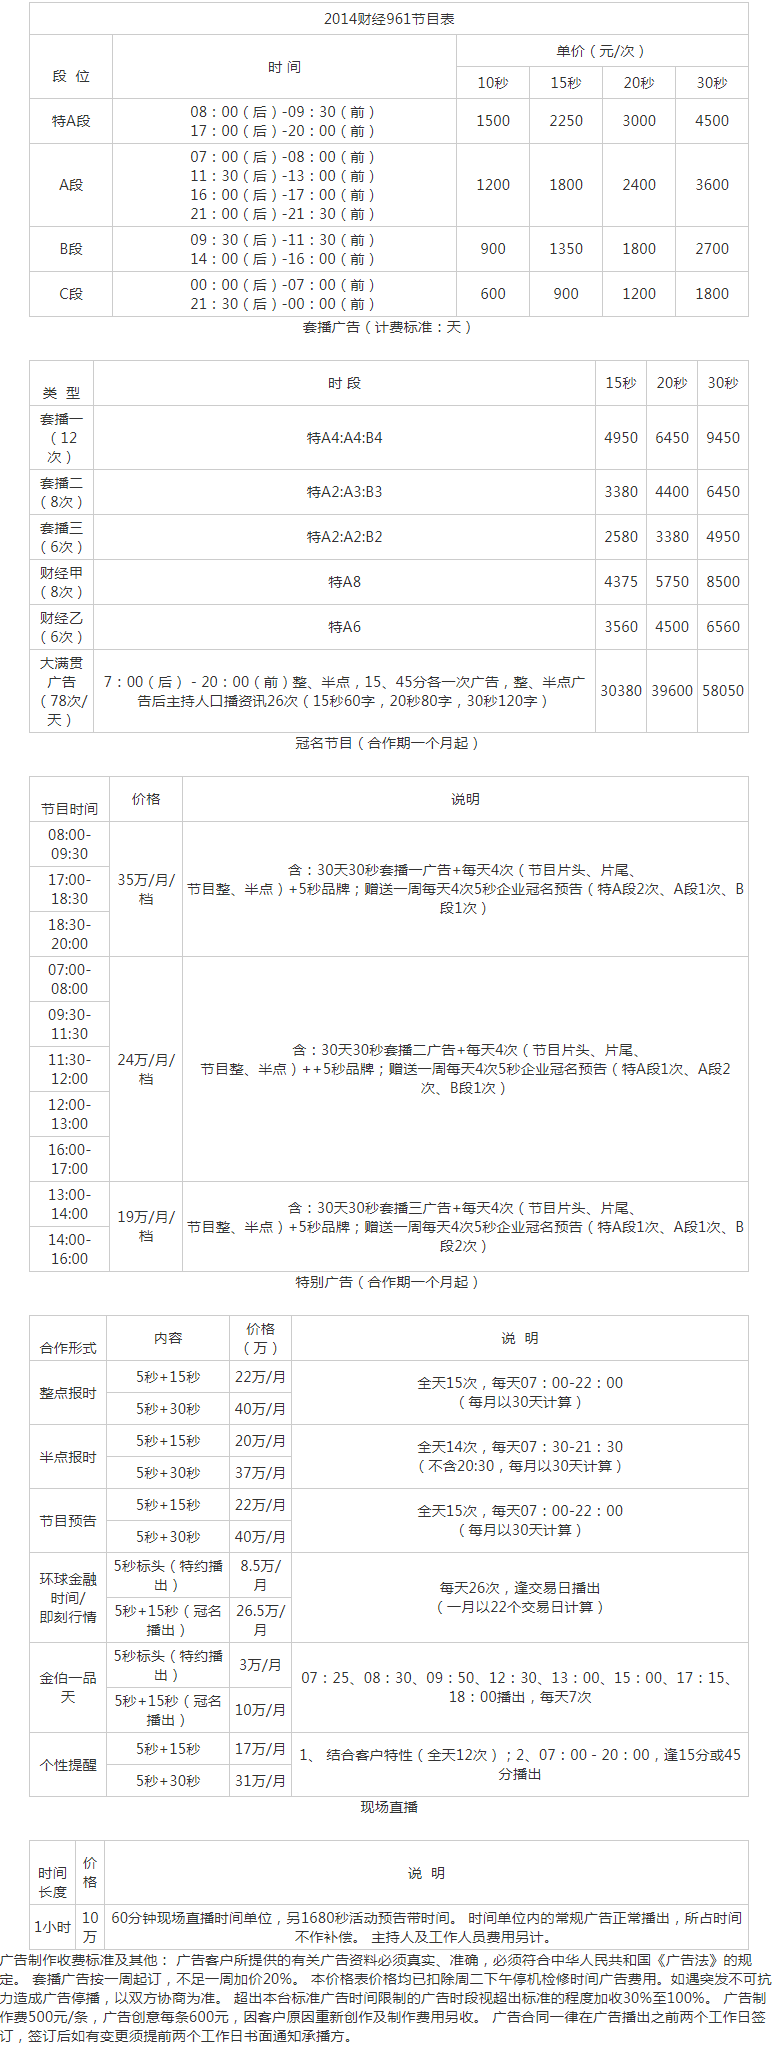 2014福建人民广播电台经济广播 FM96.1广告报价表.png